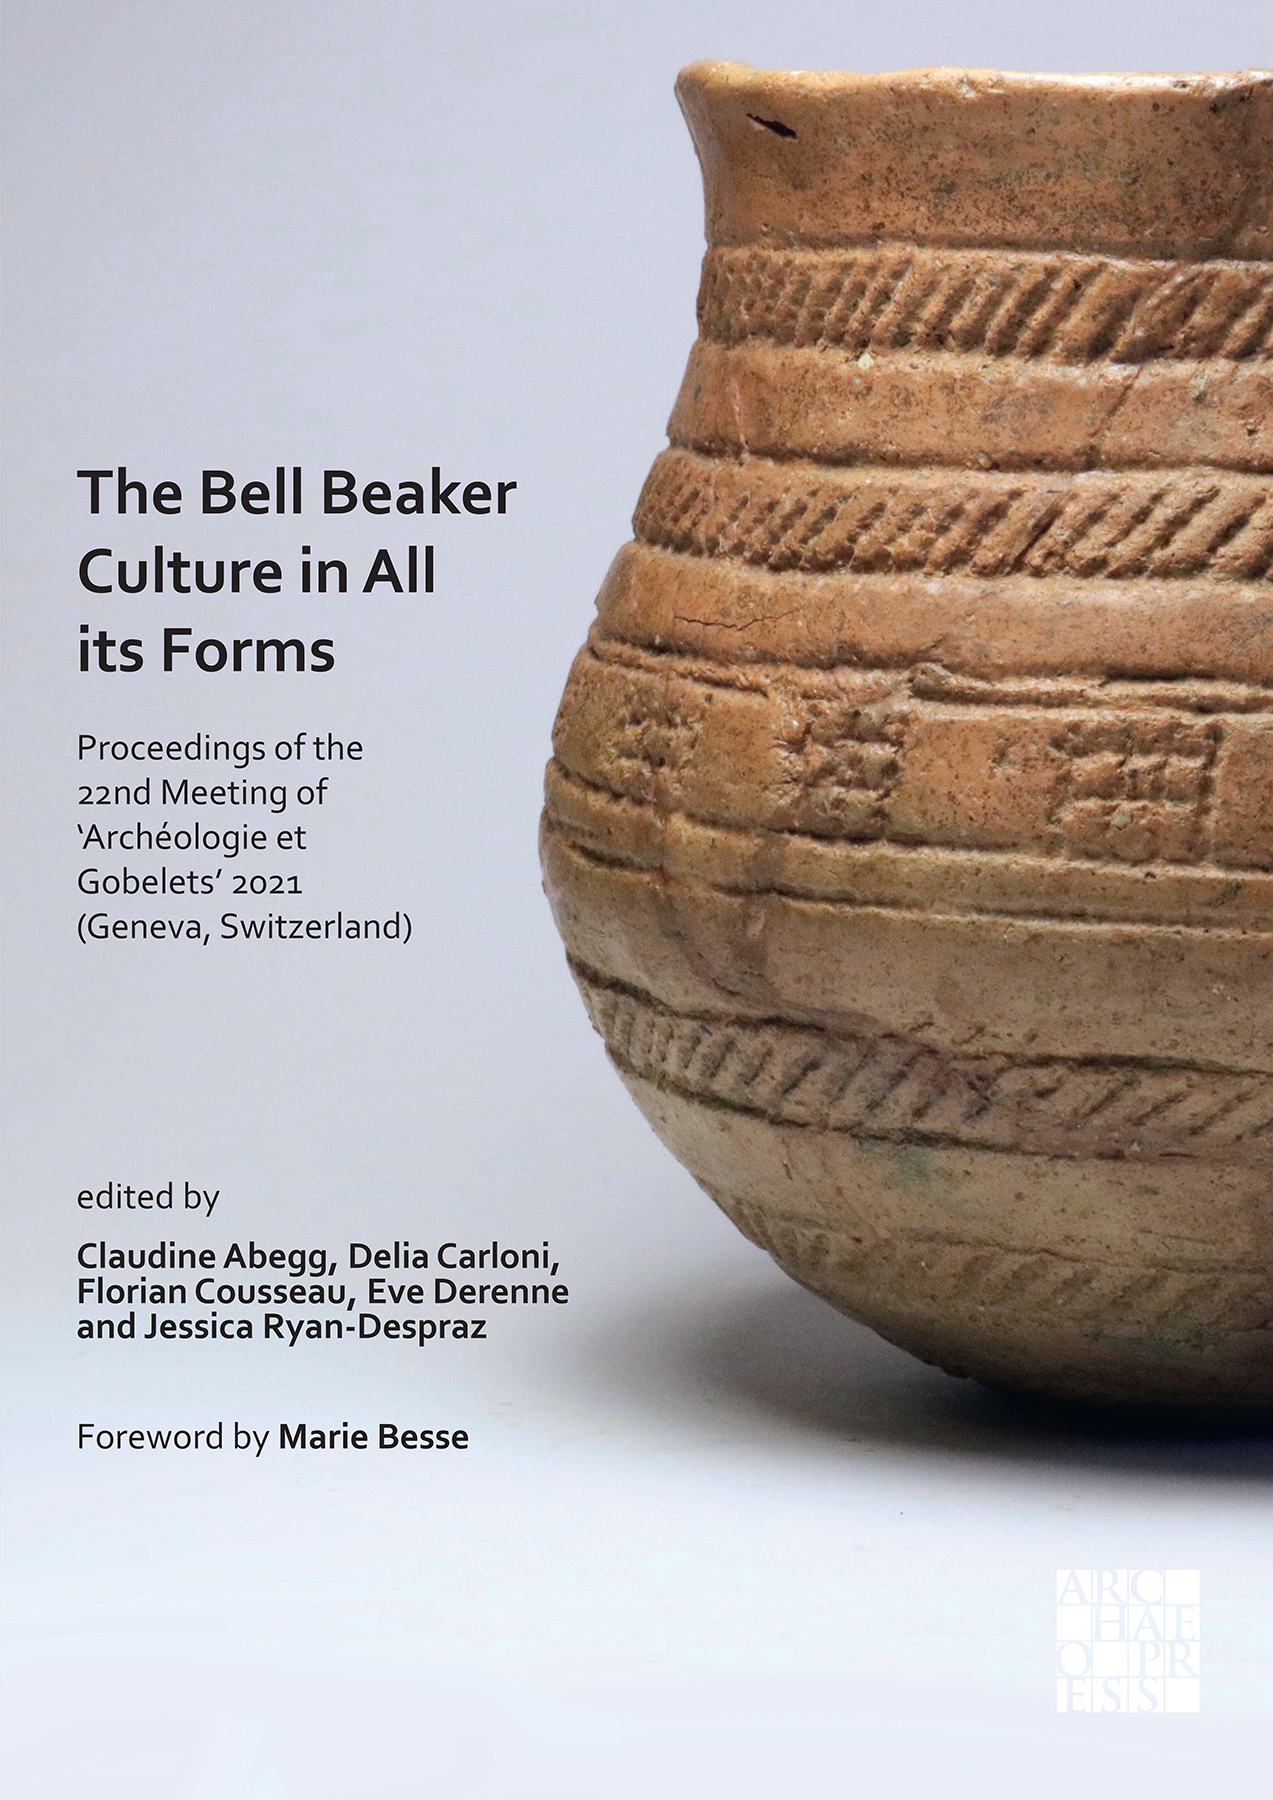 Imagen de portada del libro The Bell Beaker Culture in All its Forms